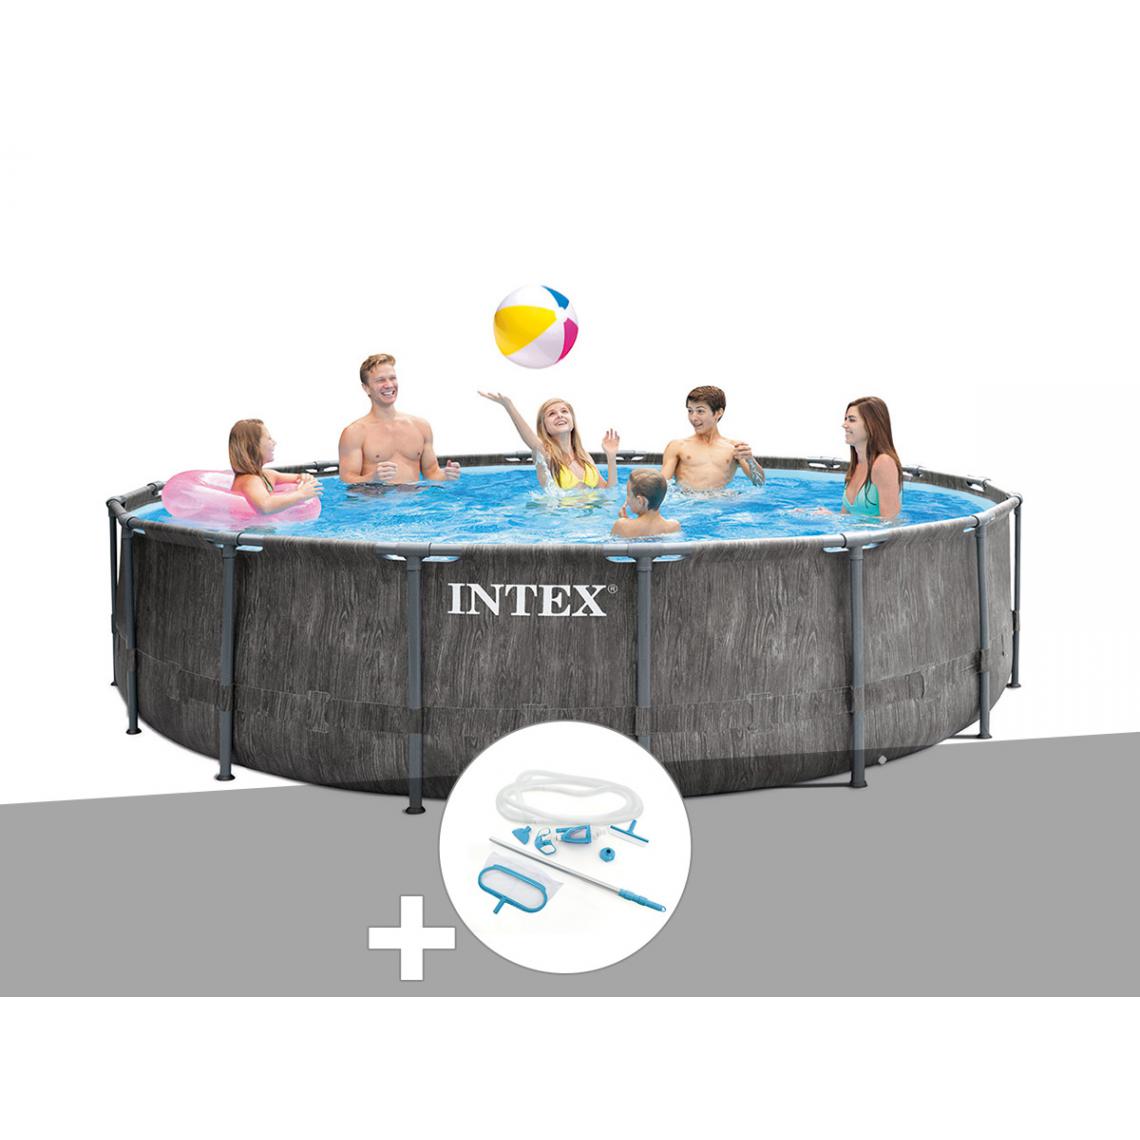 Intex - Kit piscine tubulaire Intex Baltik ronde 4,57 x 1,22 m + Kit d'entretien - Piscine Tubulaire